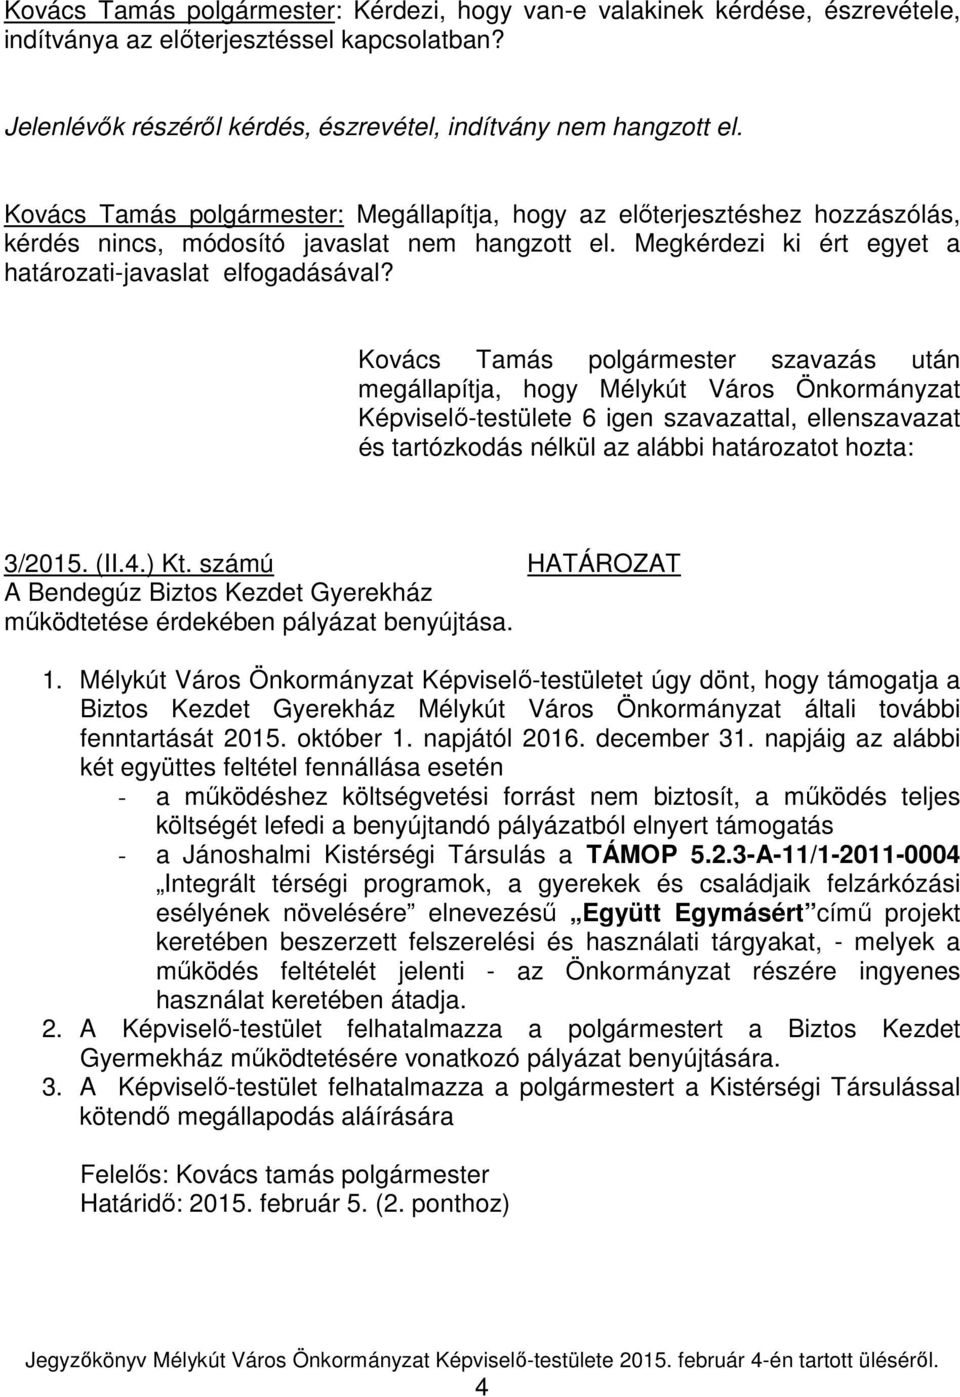 Kovács Tamás polgármester szavazás után megállapítja, hogy Mélykút Város Önkormányzat Képviselő-testülete 6 igen szavazattal, ellenszavazat és tartózkodás nélkül az alábbi határozatot hozta: 3/2015.